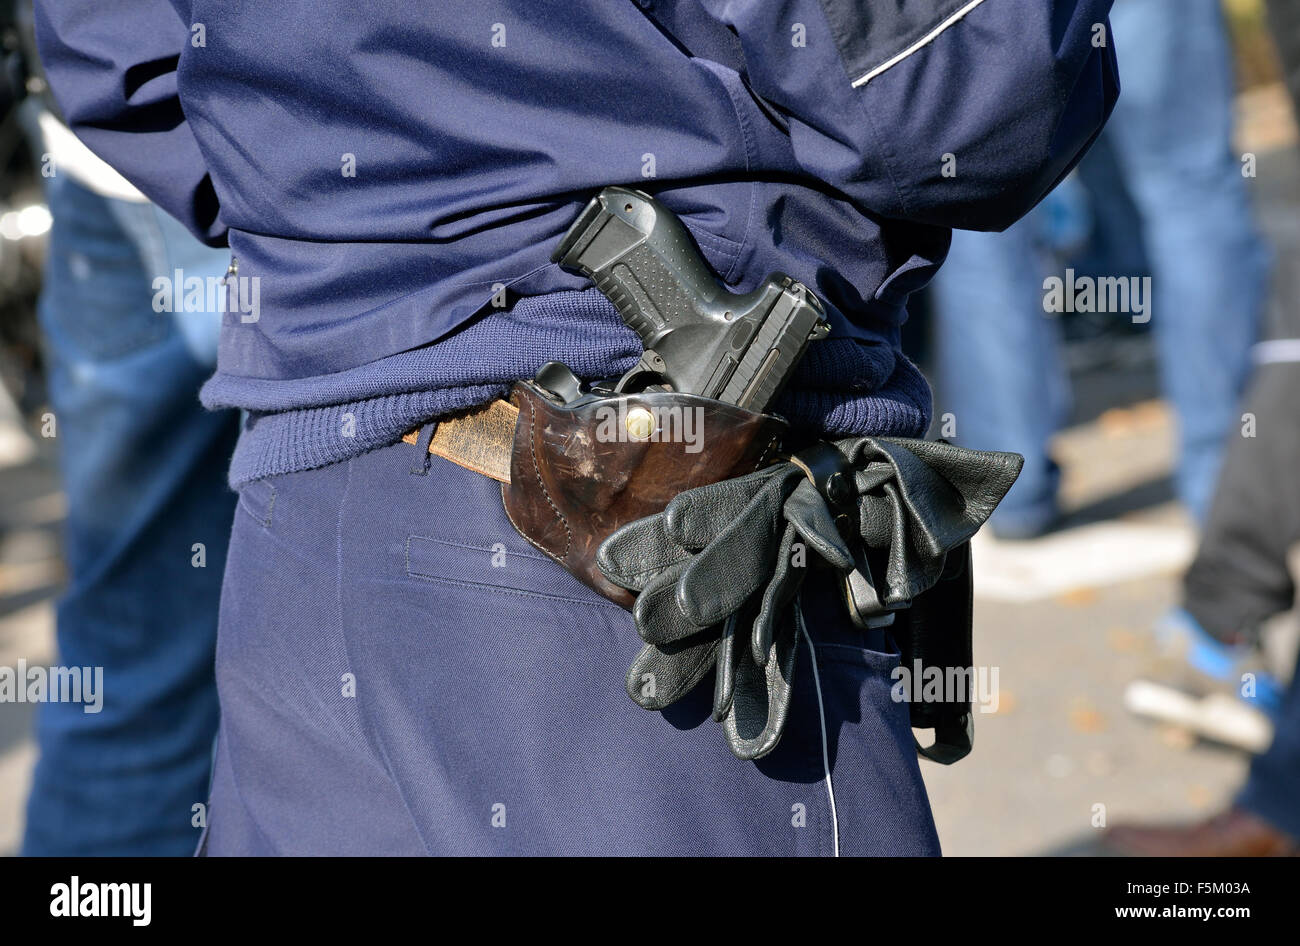 Pistole eines Polizisten an seinem holster Stockfoto